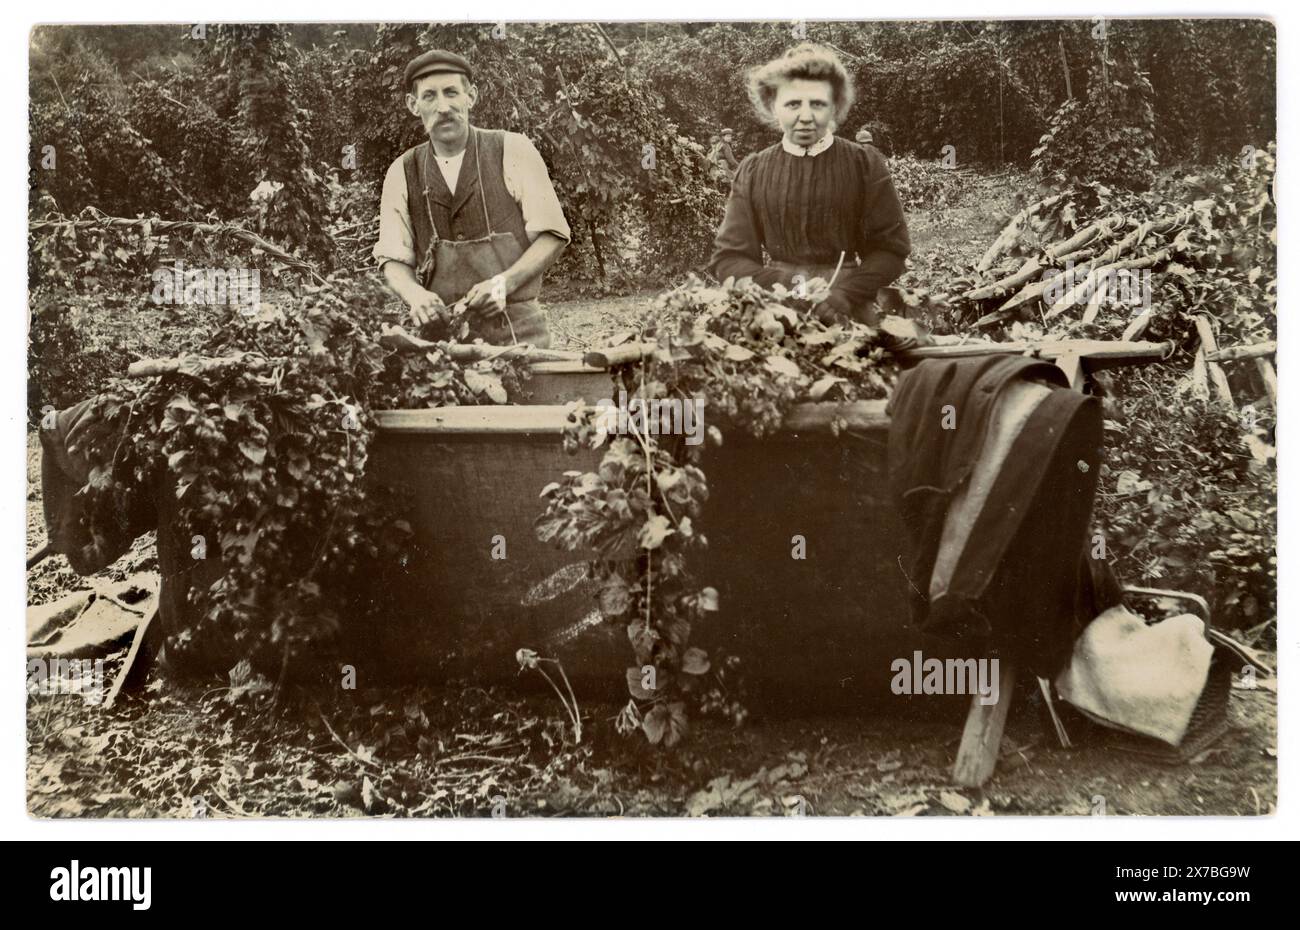 Carte postale originale de l'ère édouardienne des cueilleurs de houblon, couple, remplissant les bacs - mettre des «bacs» de houblon (également connu sous le nom de vignes de houblon ou guirlandes) dans les bacs de houblon, circa 1908, Angleterre, Royaume-Uni Banque D'Images